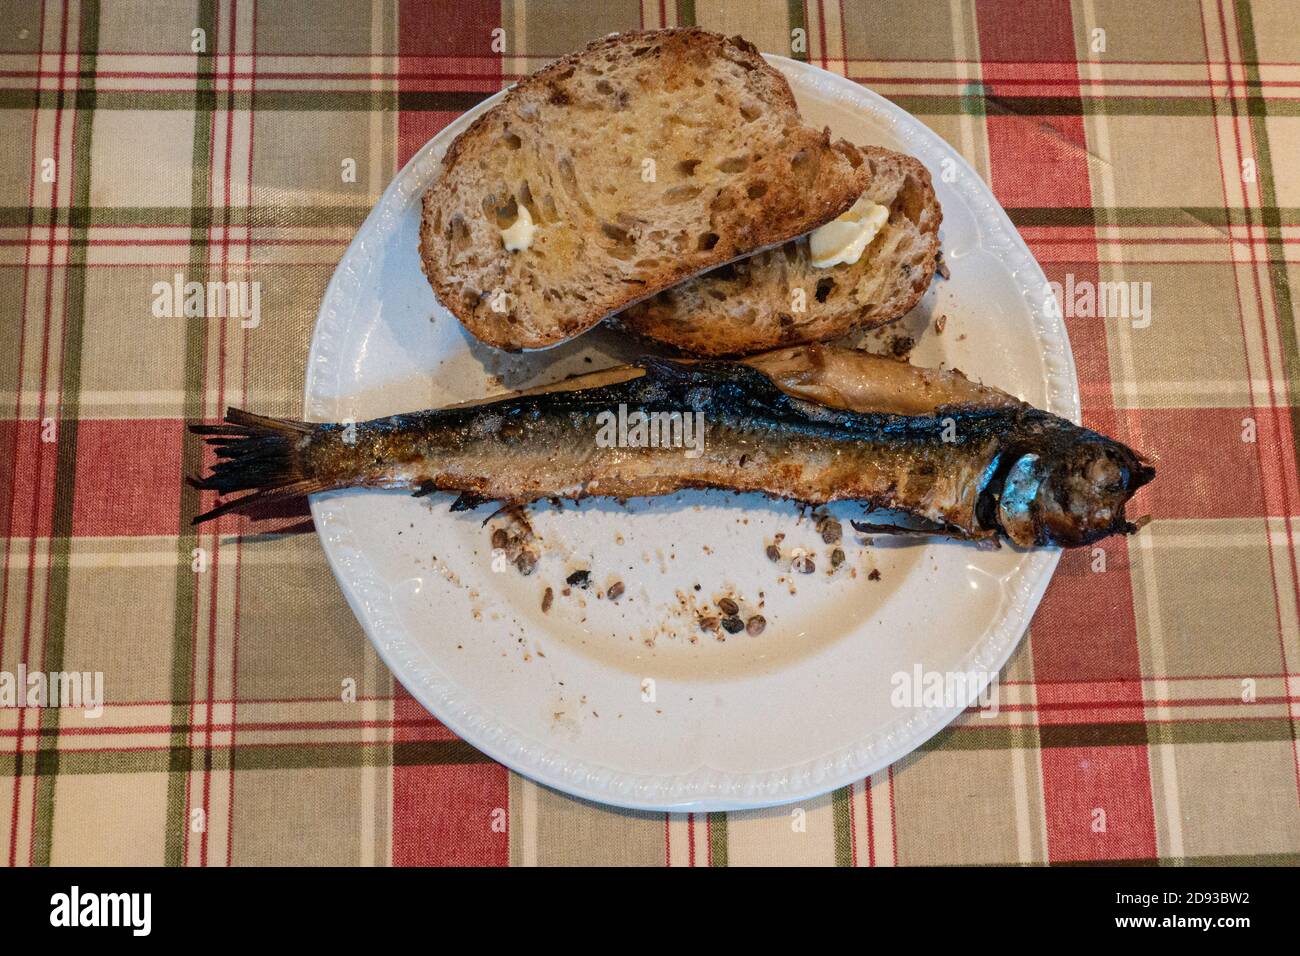 Ganzer geräucherter Fisch (Schellfisch), bekannt als Arbroath Smokies oder kipper, auf einem Teller mit gebuttertem Sauerteig-Toast auf einer Tartan-Tischdecke, Schottland, Großbritannien Stockfoto